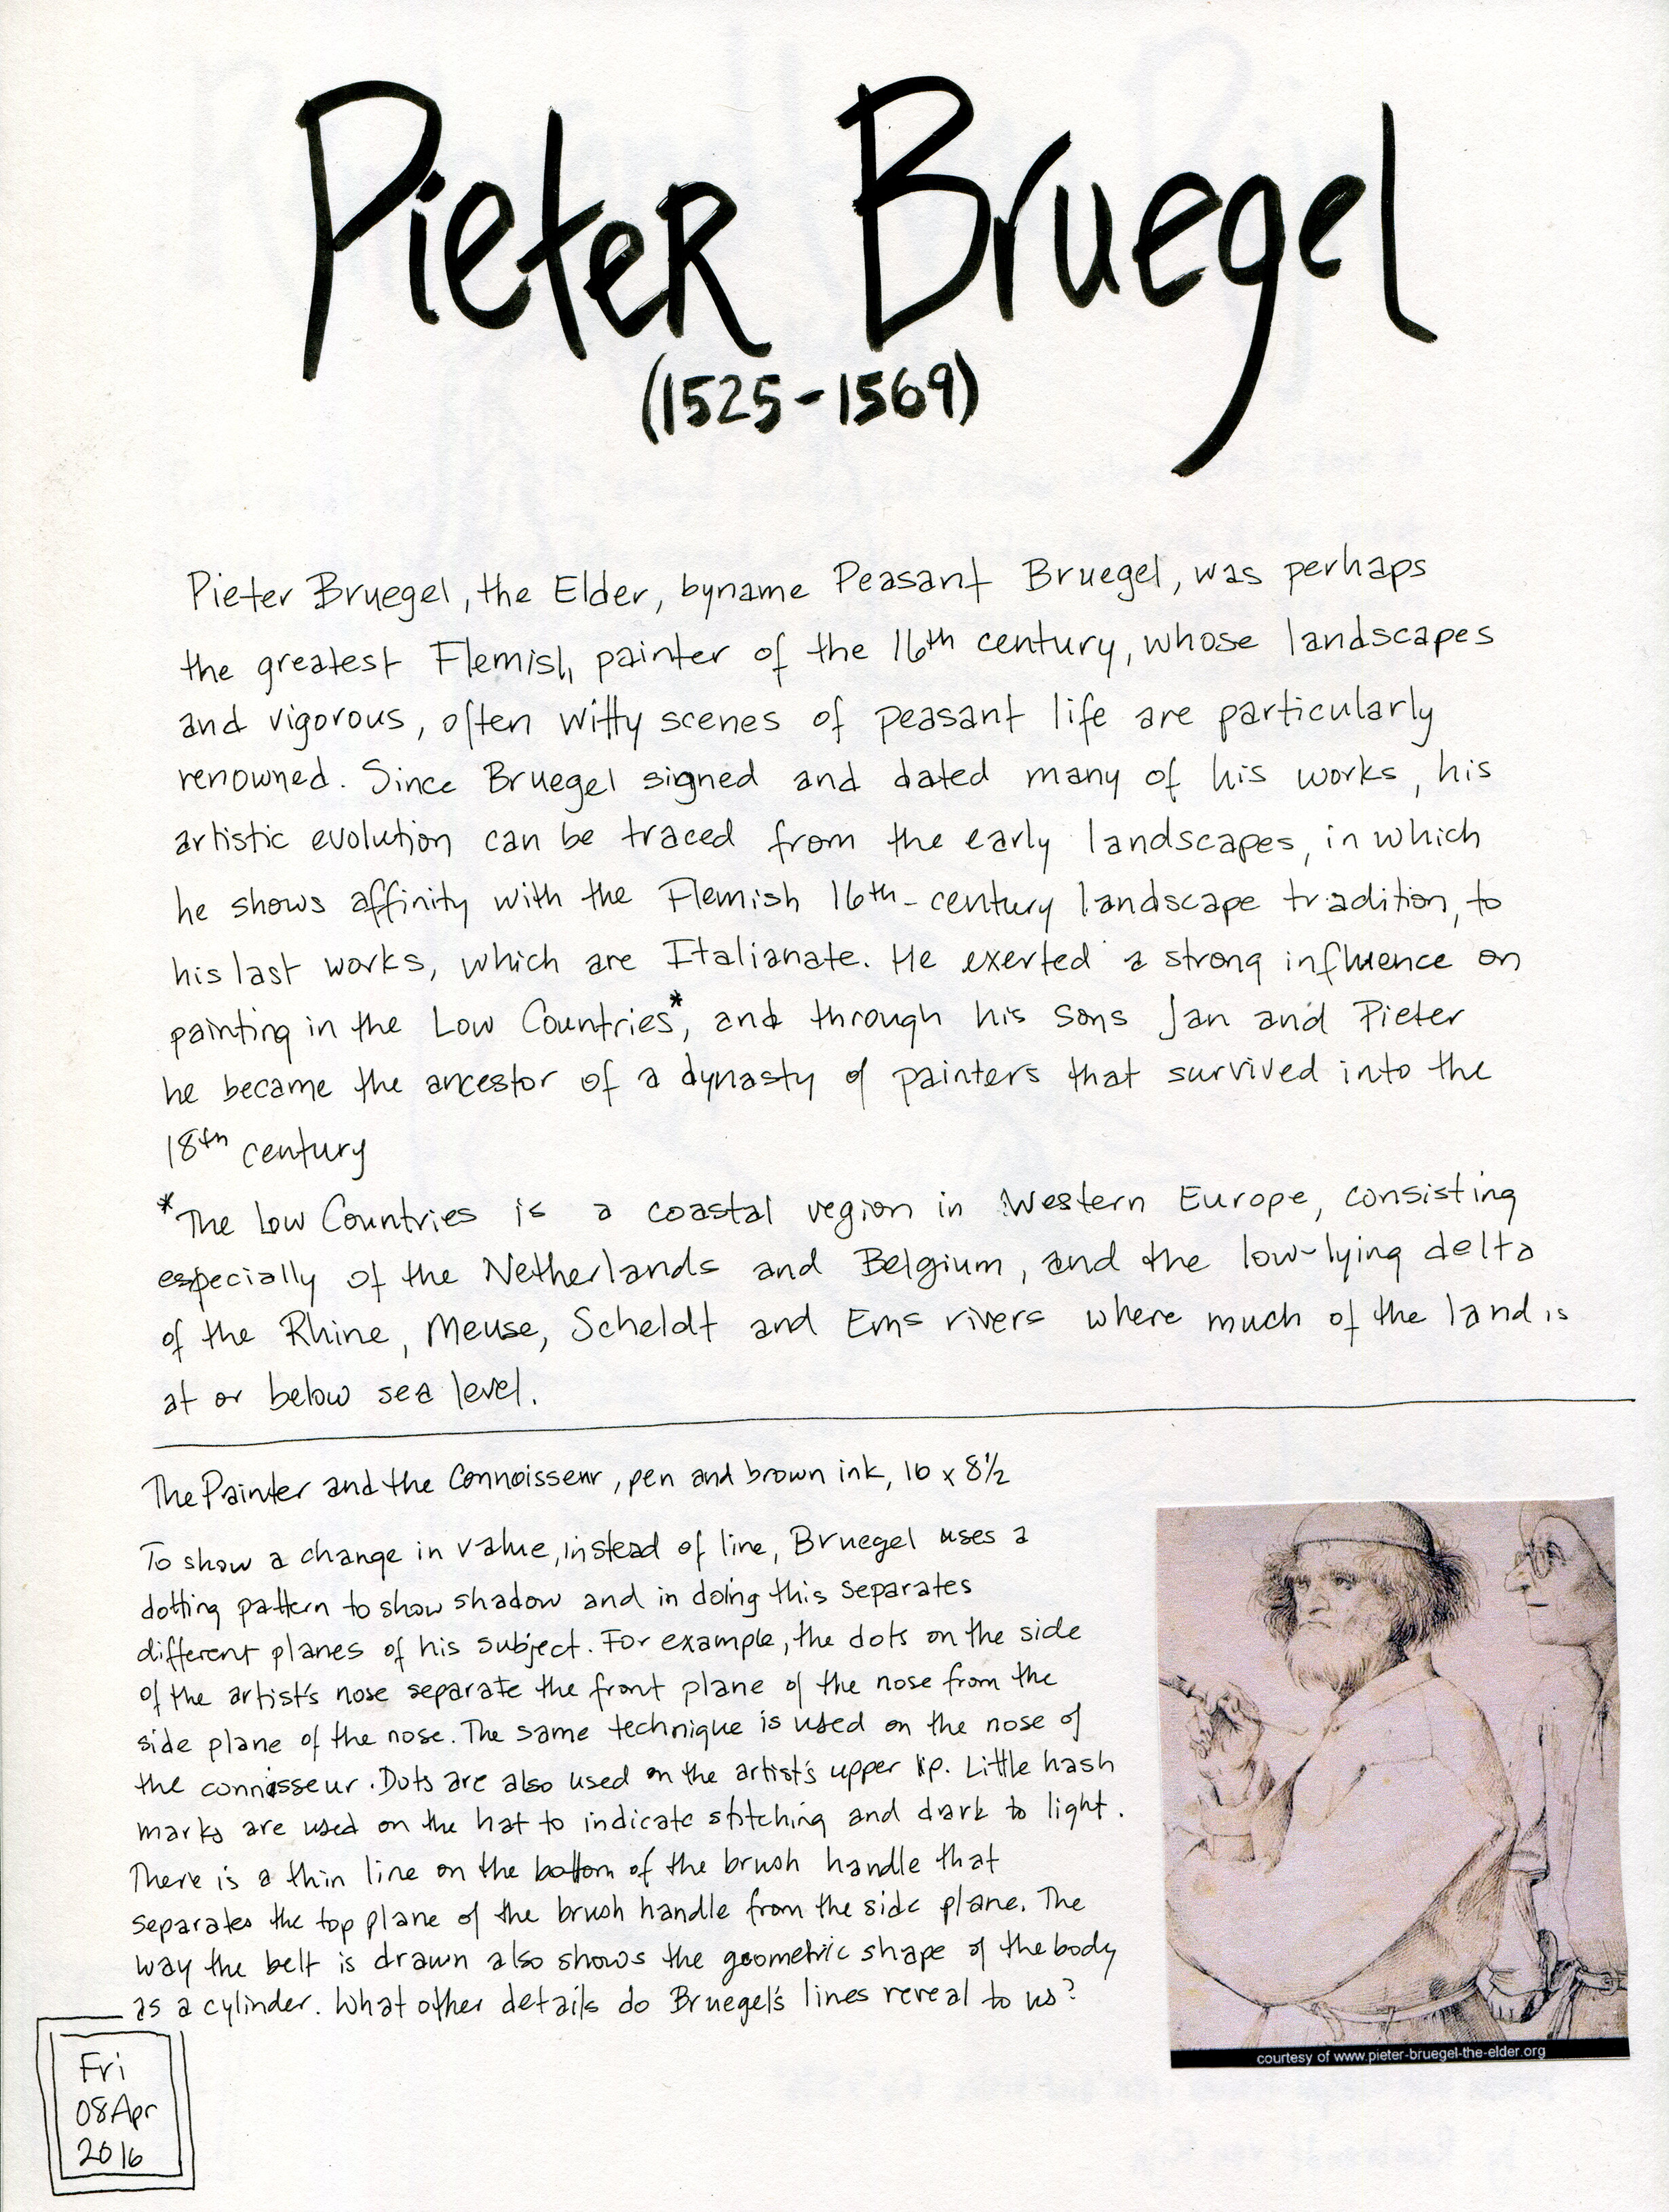 Notes on Pieter Bruegel